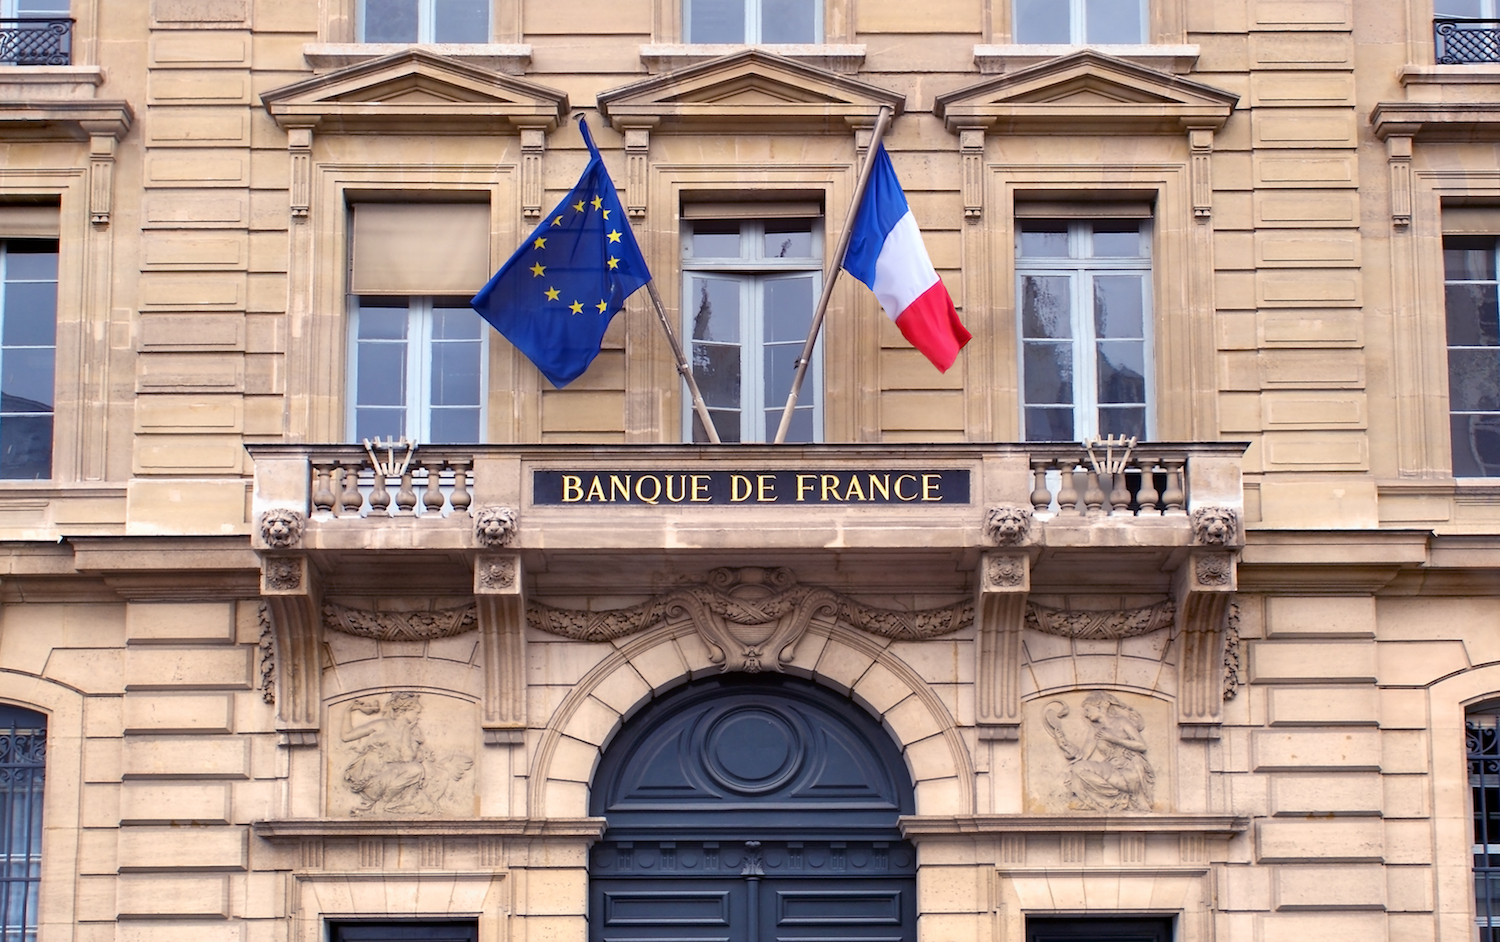 ЦБ Франции, Швейцарский инновационный центр и Национальный банк Швейцарии  завершили тестирование трансграничных платежей в цифровых евро и швейцарском франке.